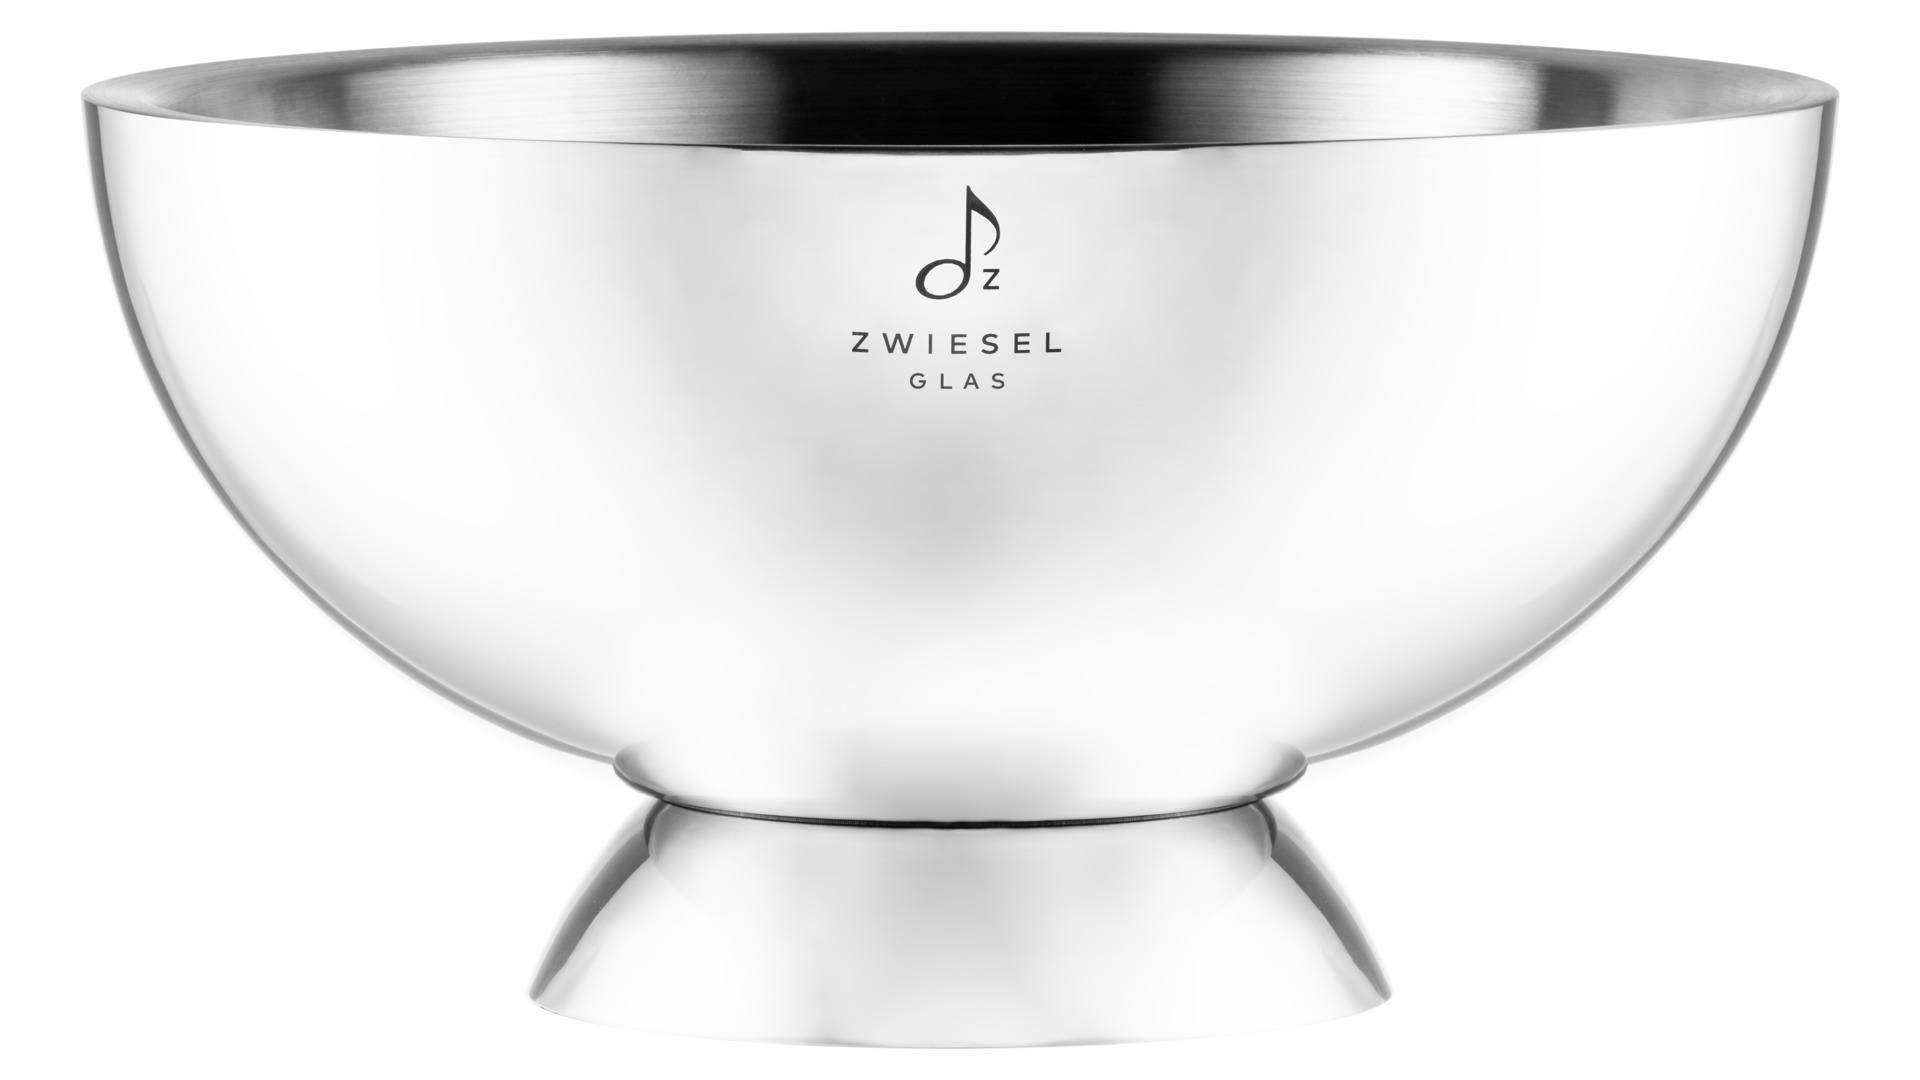 Чаша для охлаждения шампанского Zwiesel Glas 43 см, сталь нержавеющая